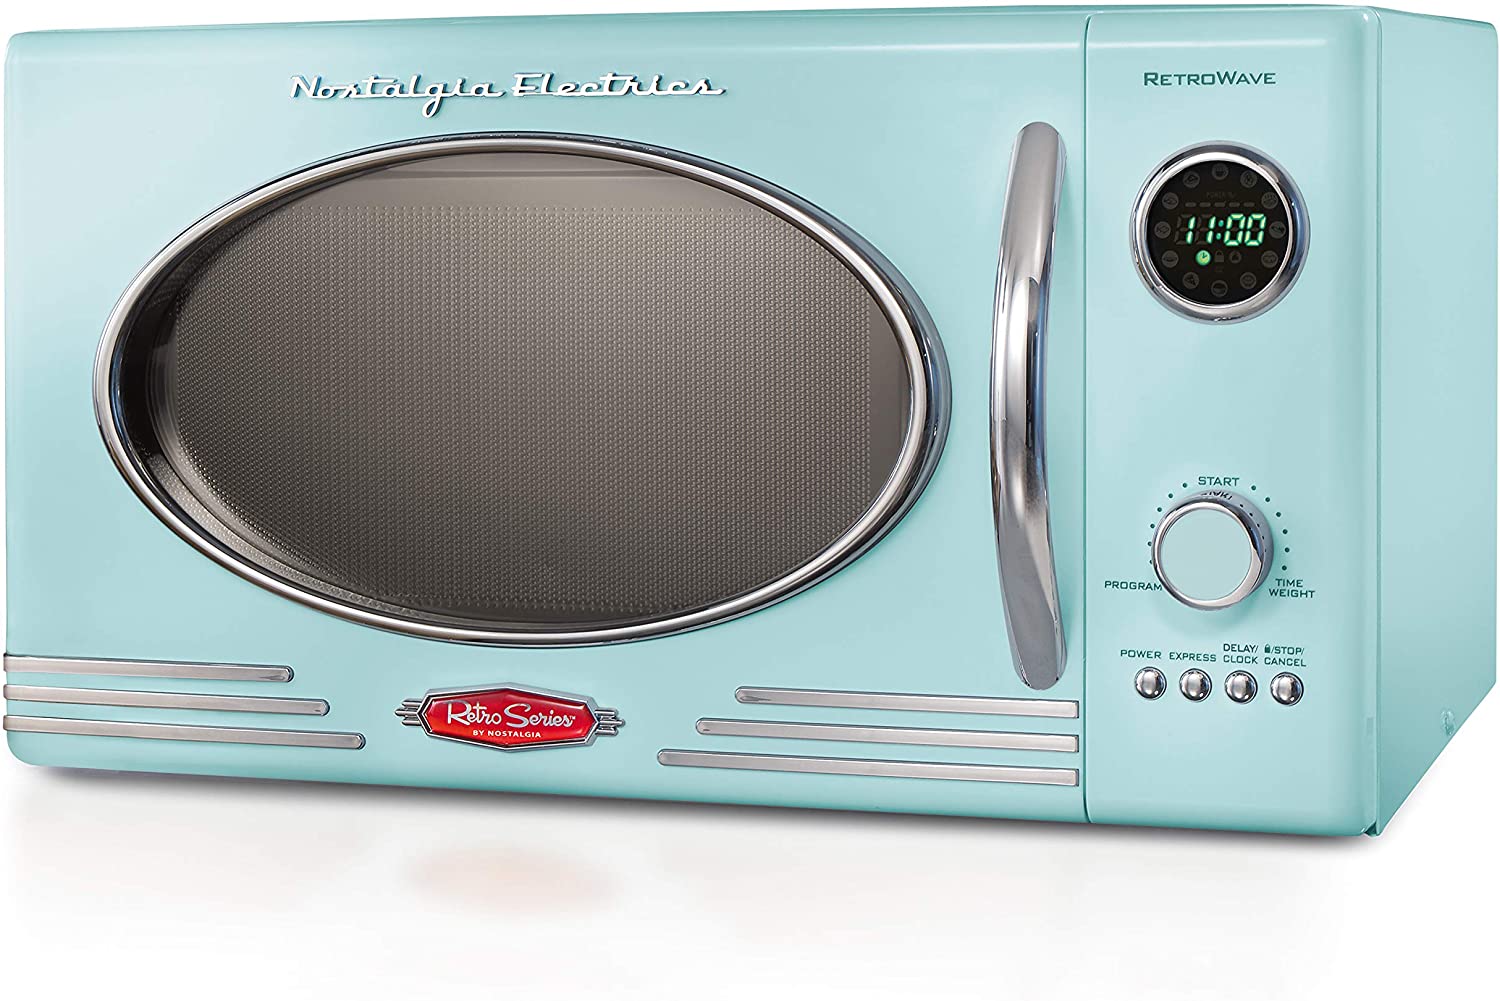 Nostalgia RMO4AQ Retro Large Toaster Oven